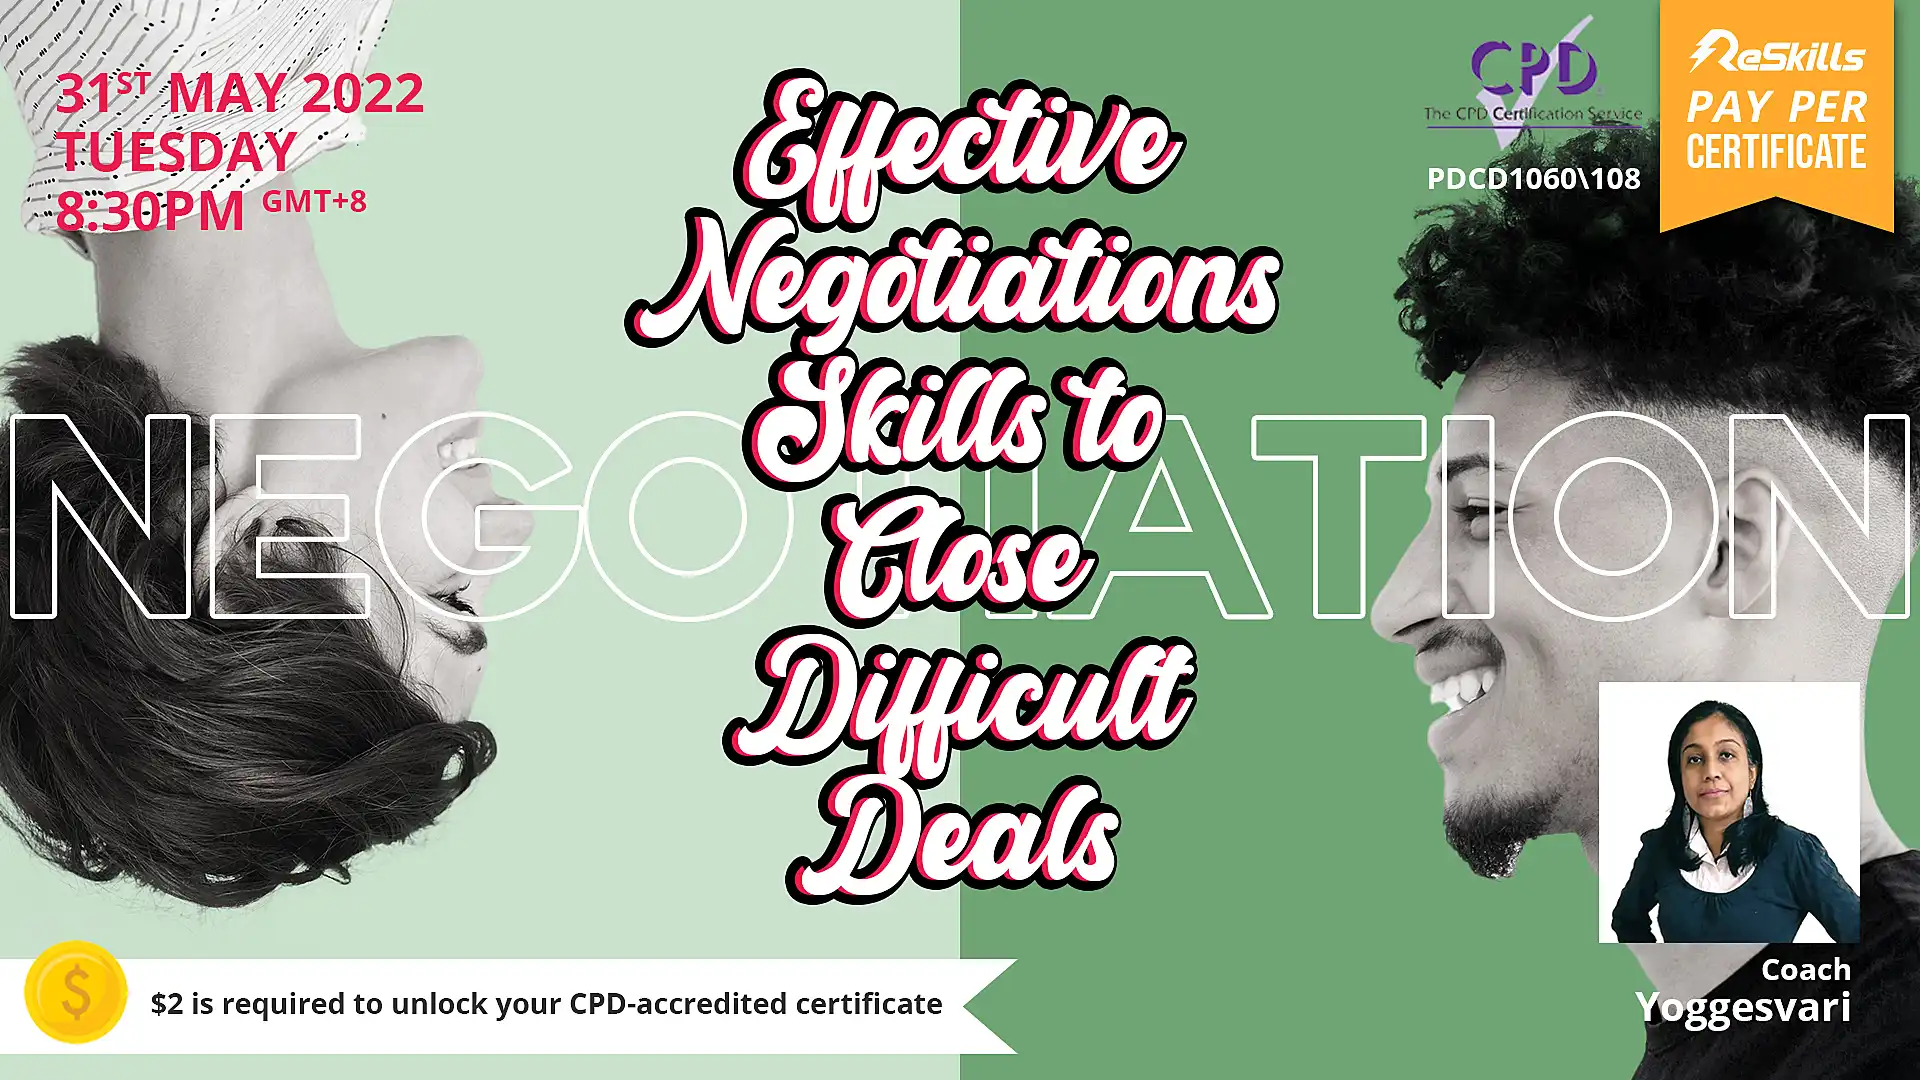 Effective Negotiations Skills to Close Difficult Deals - ReSkills